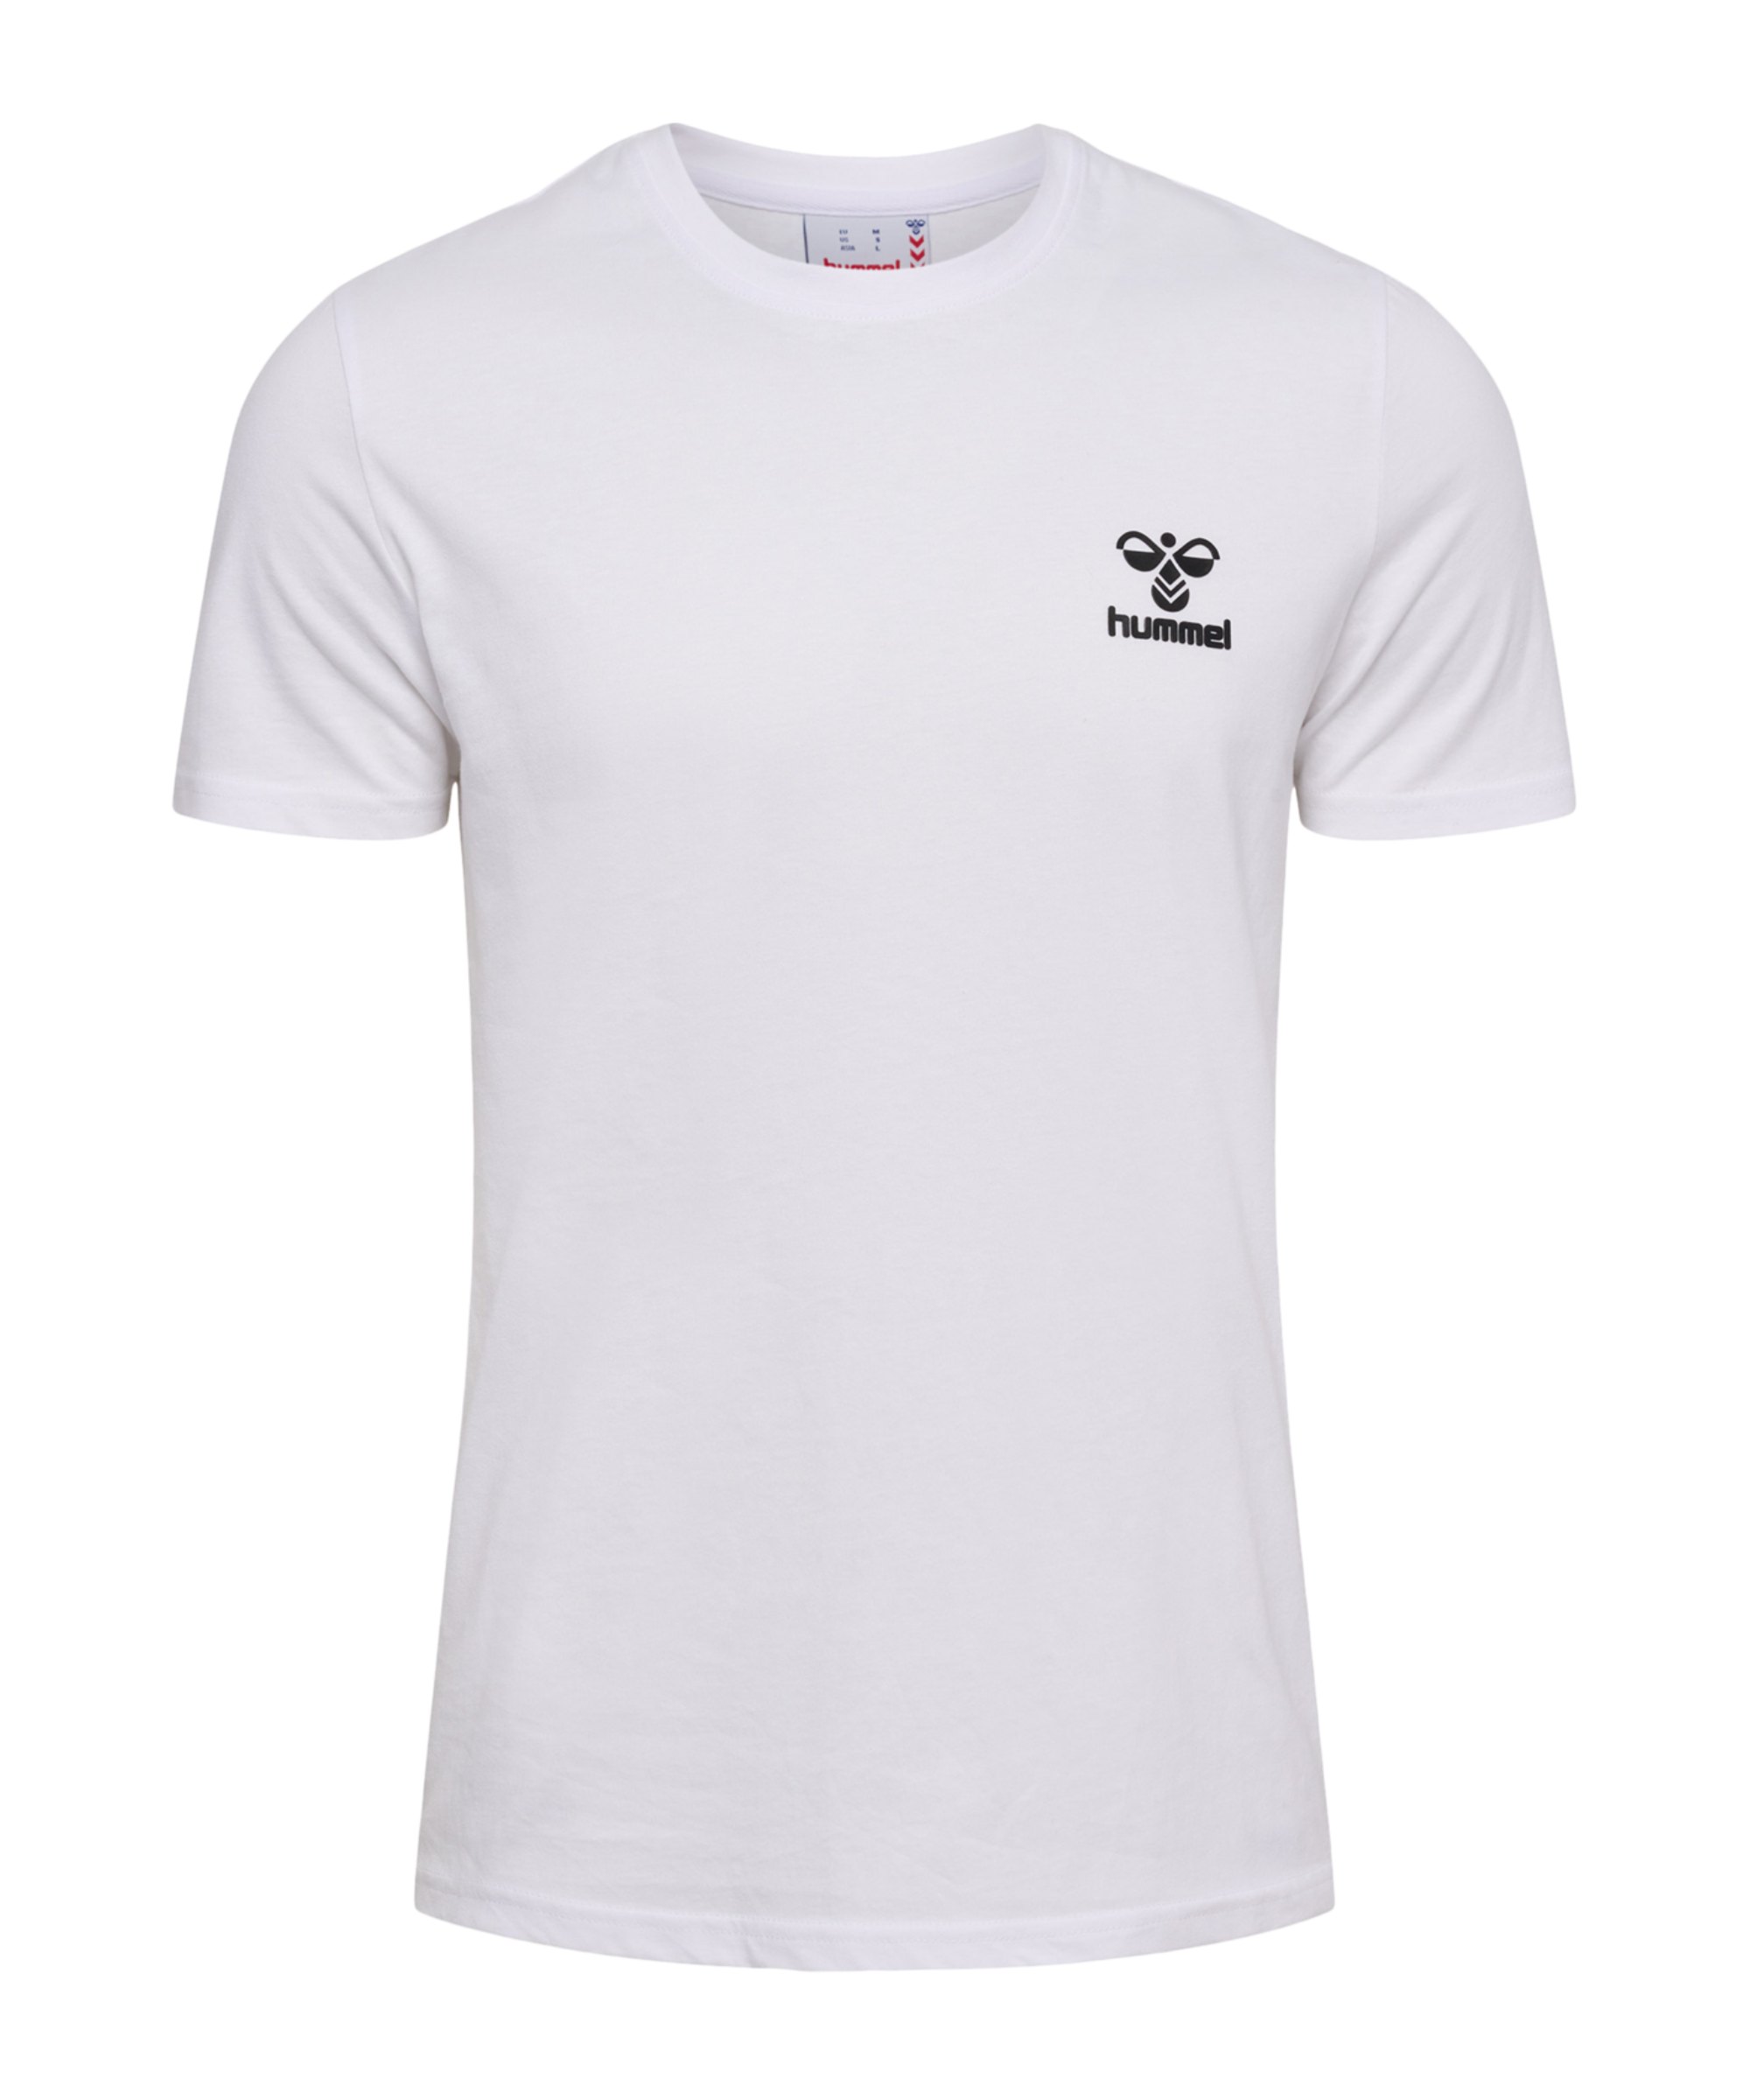 T-Shirt weiss Weiss hmllCONS Hummel